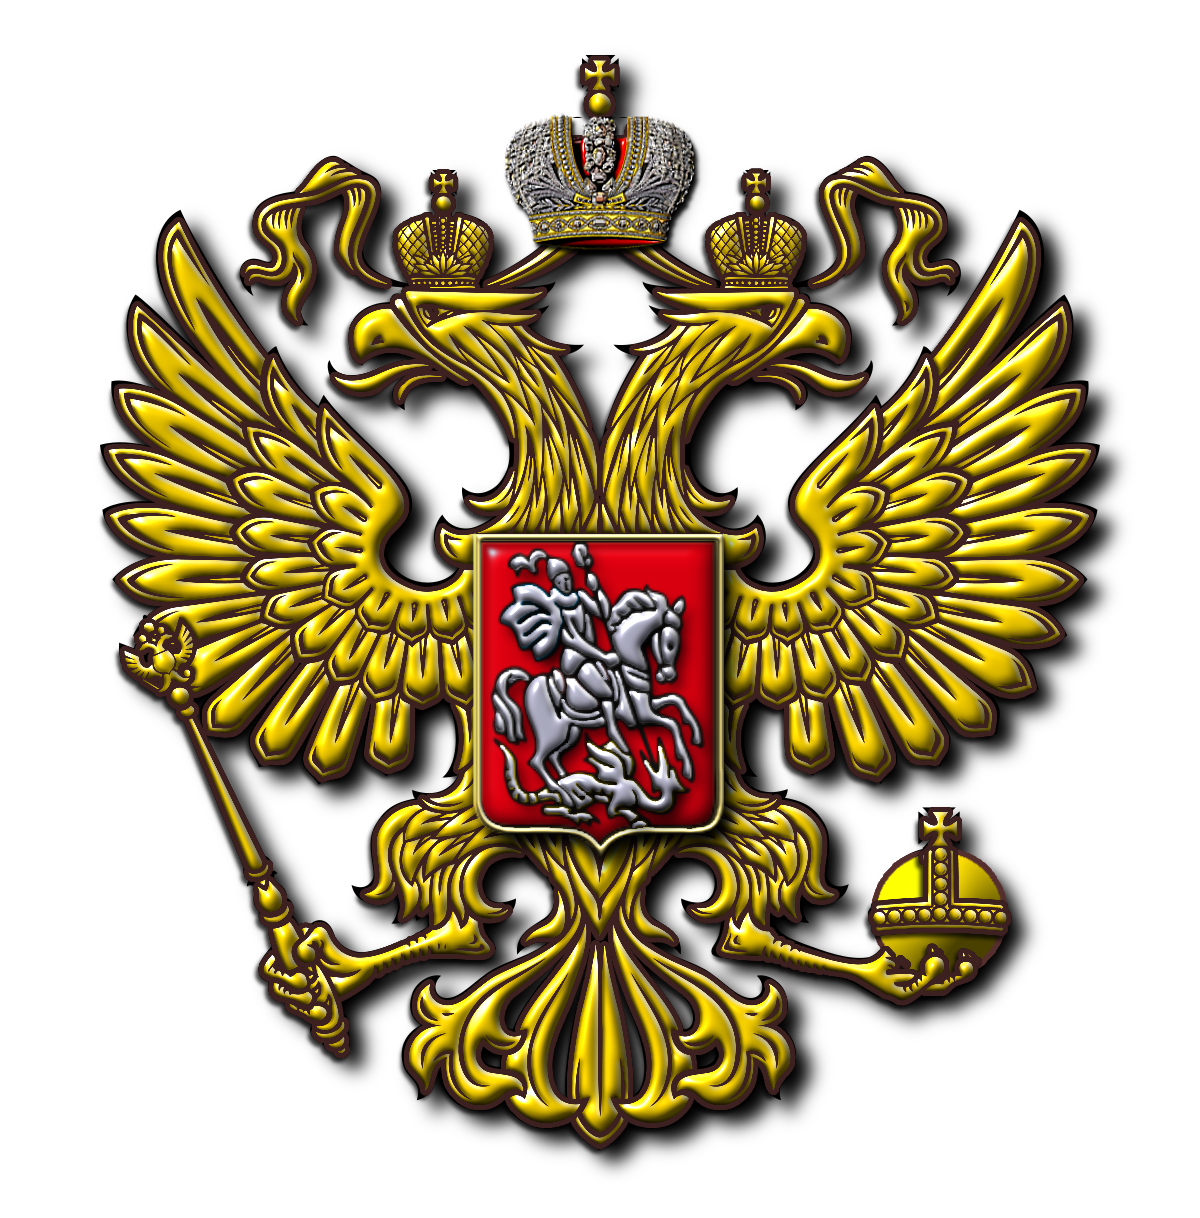 Герб с изображением двуглавого орла с коронами на головах появился в россии при